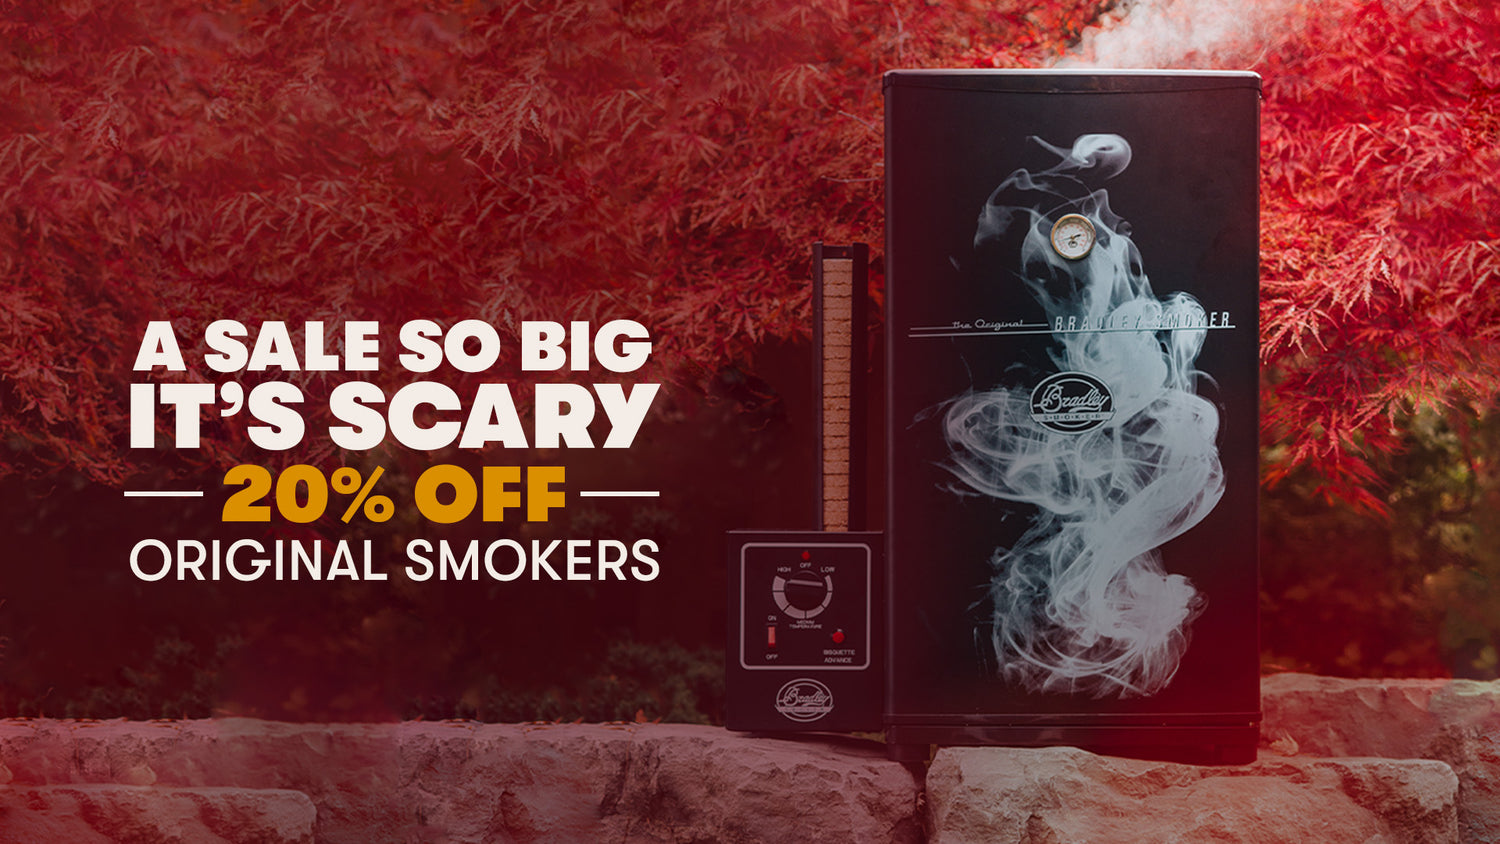 Halloween SALE! 
Up to 20% off Original Smoker October 28 - October 31
Shop Now
*Sale applies to orders on bradleysmoker.com